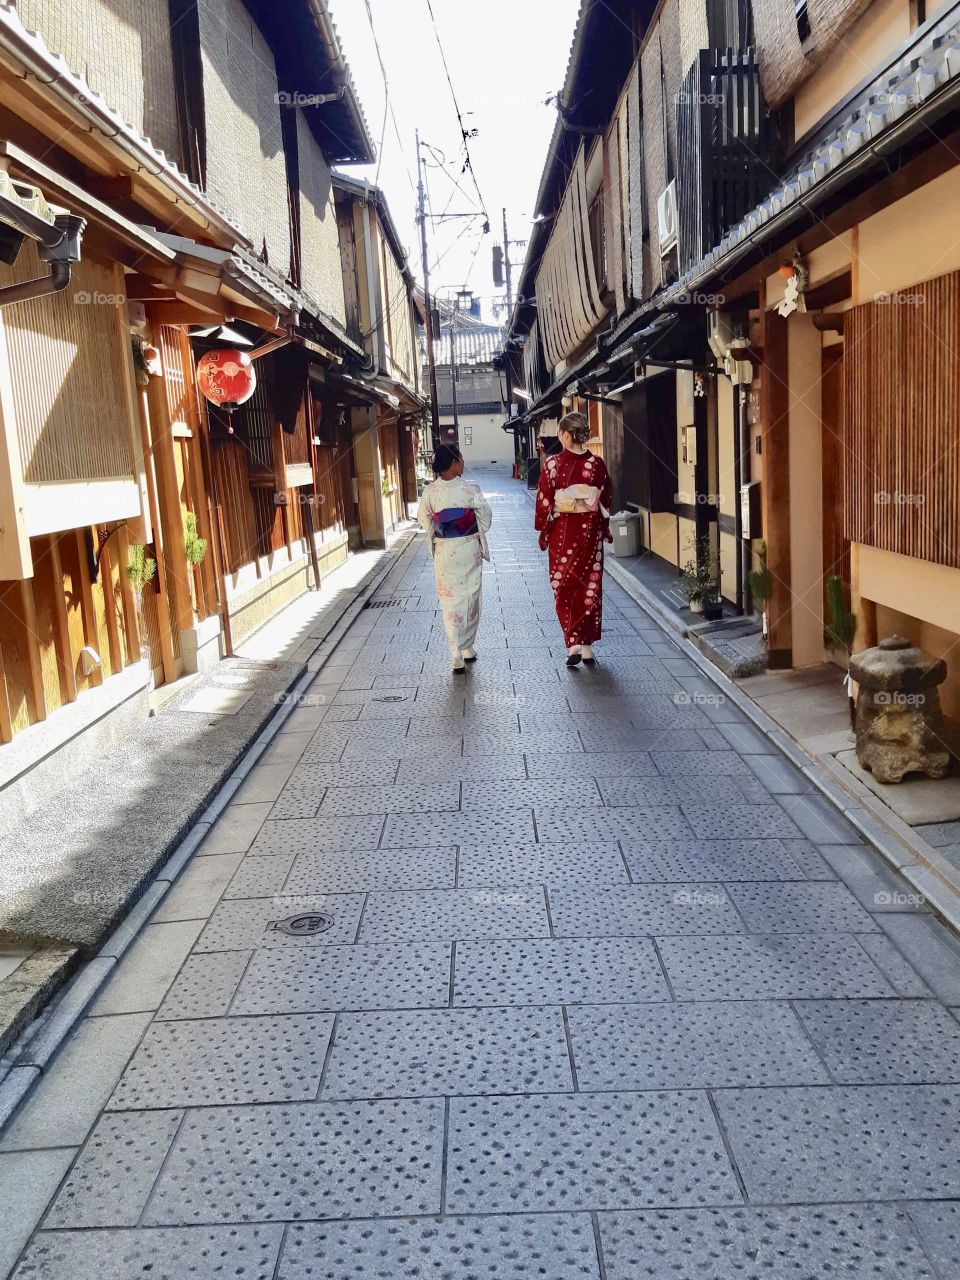 Touring fun in Japan. Beautiful kimono walking in the streets 